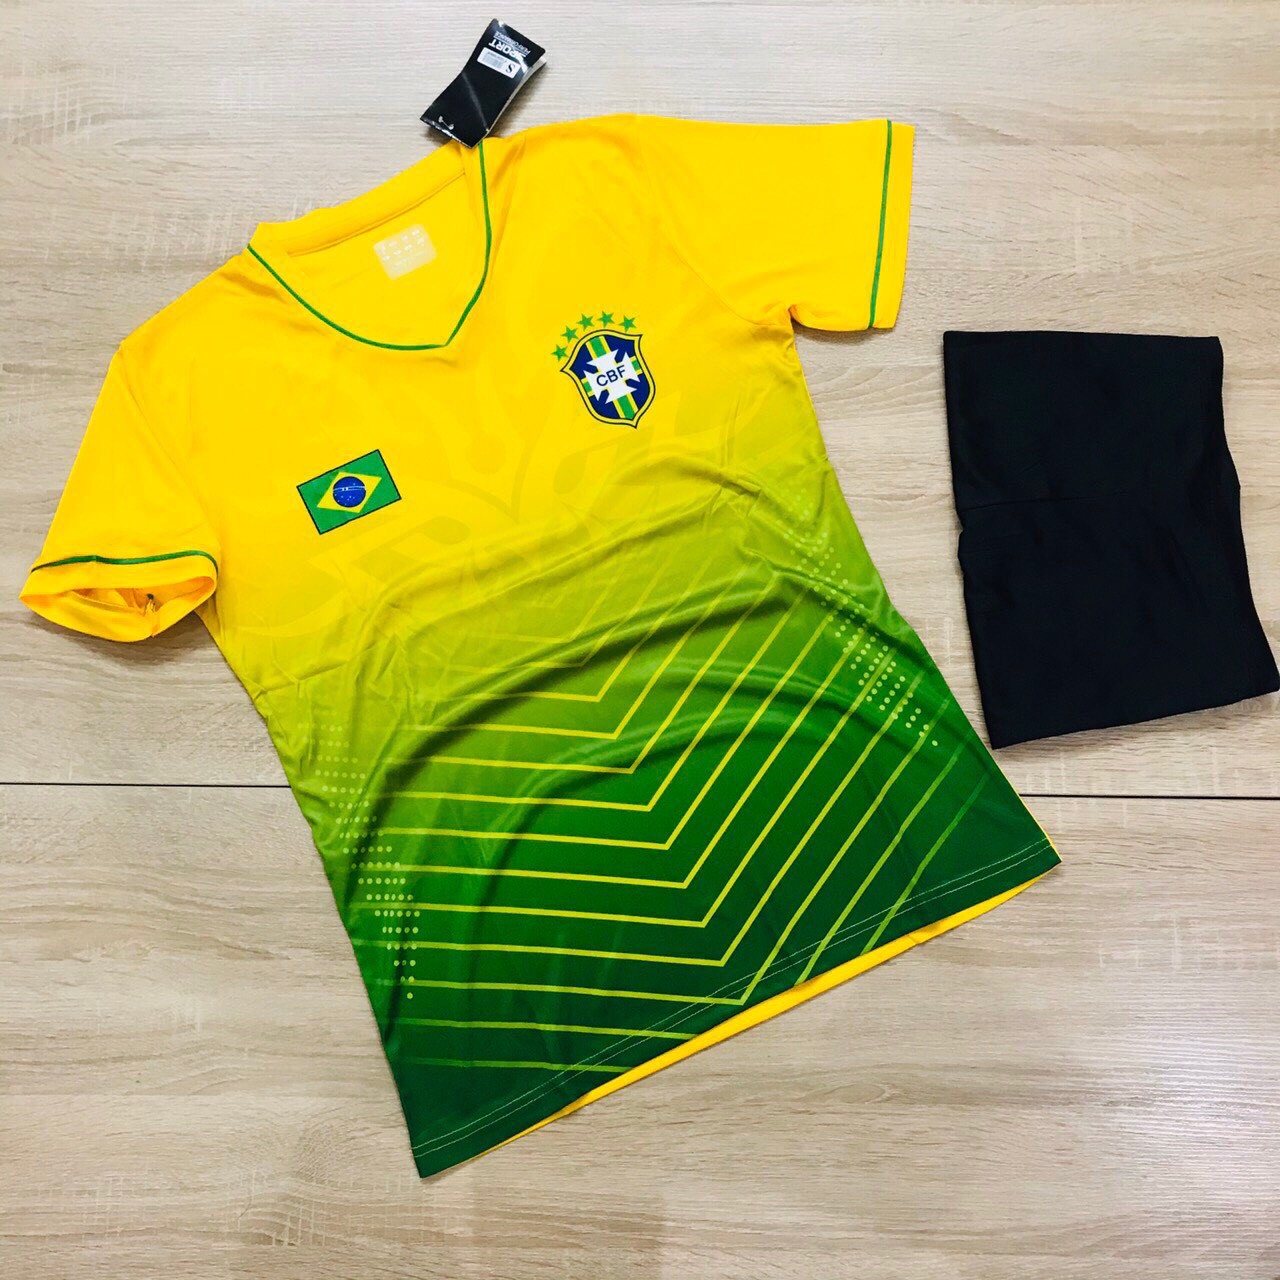 Áo bóng đá đội tuyển Brasil vàng phối xanh lá 2 mới nhất 2020